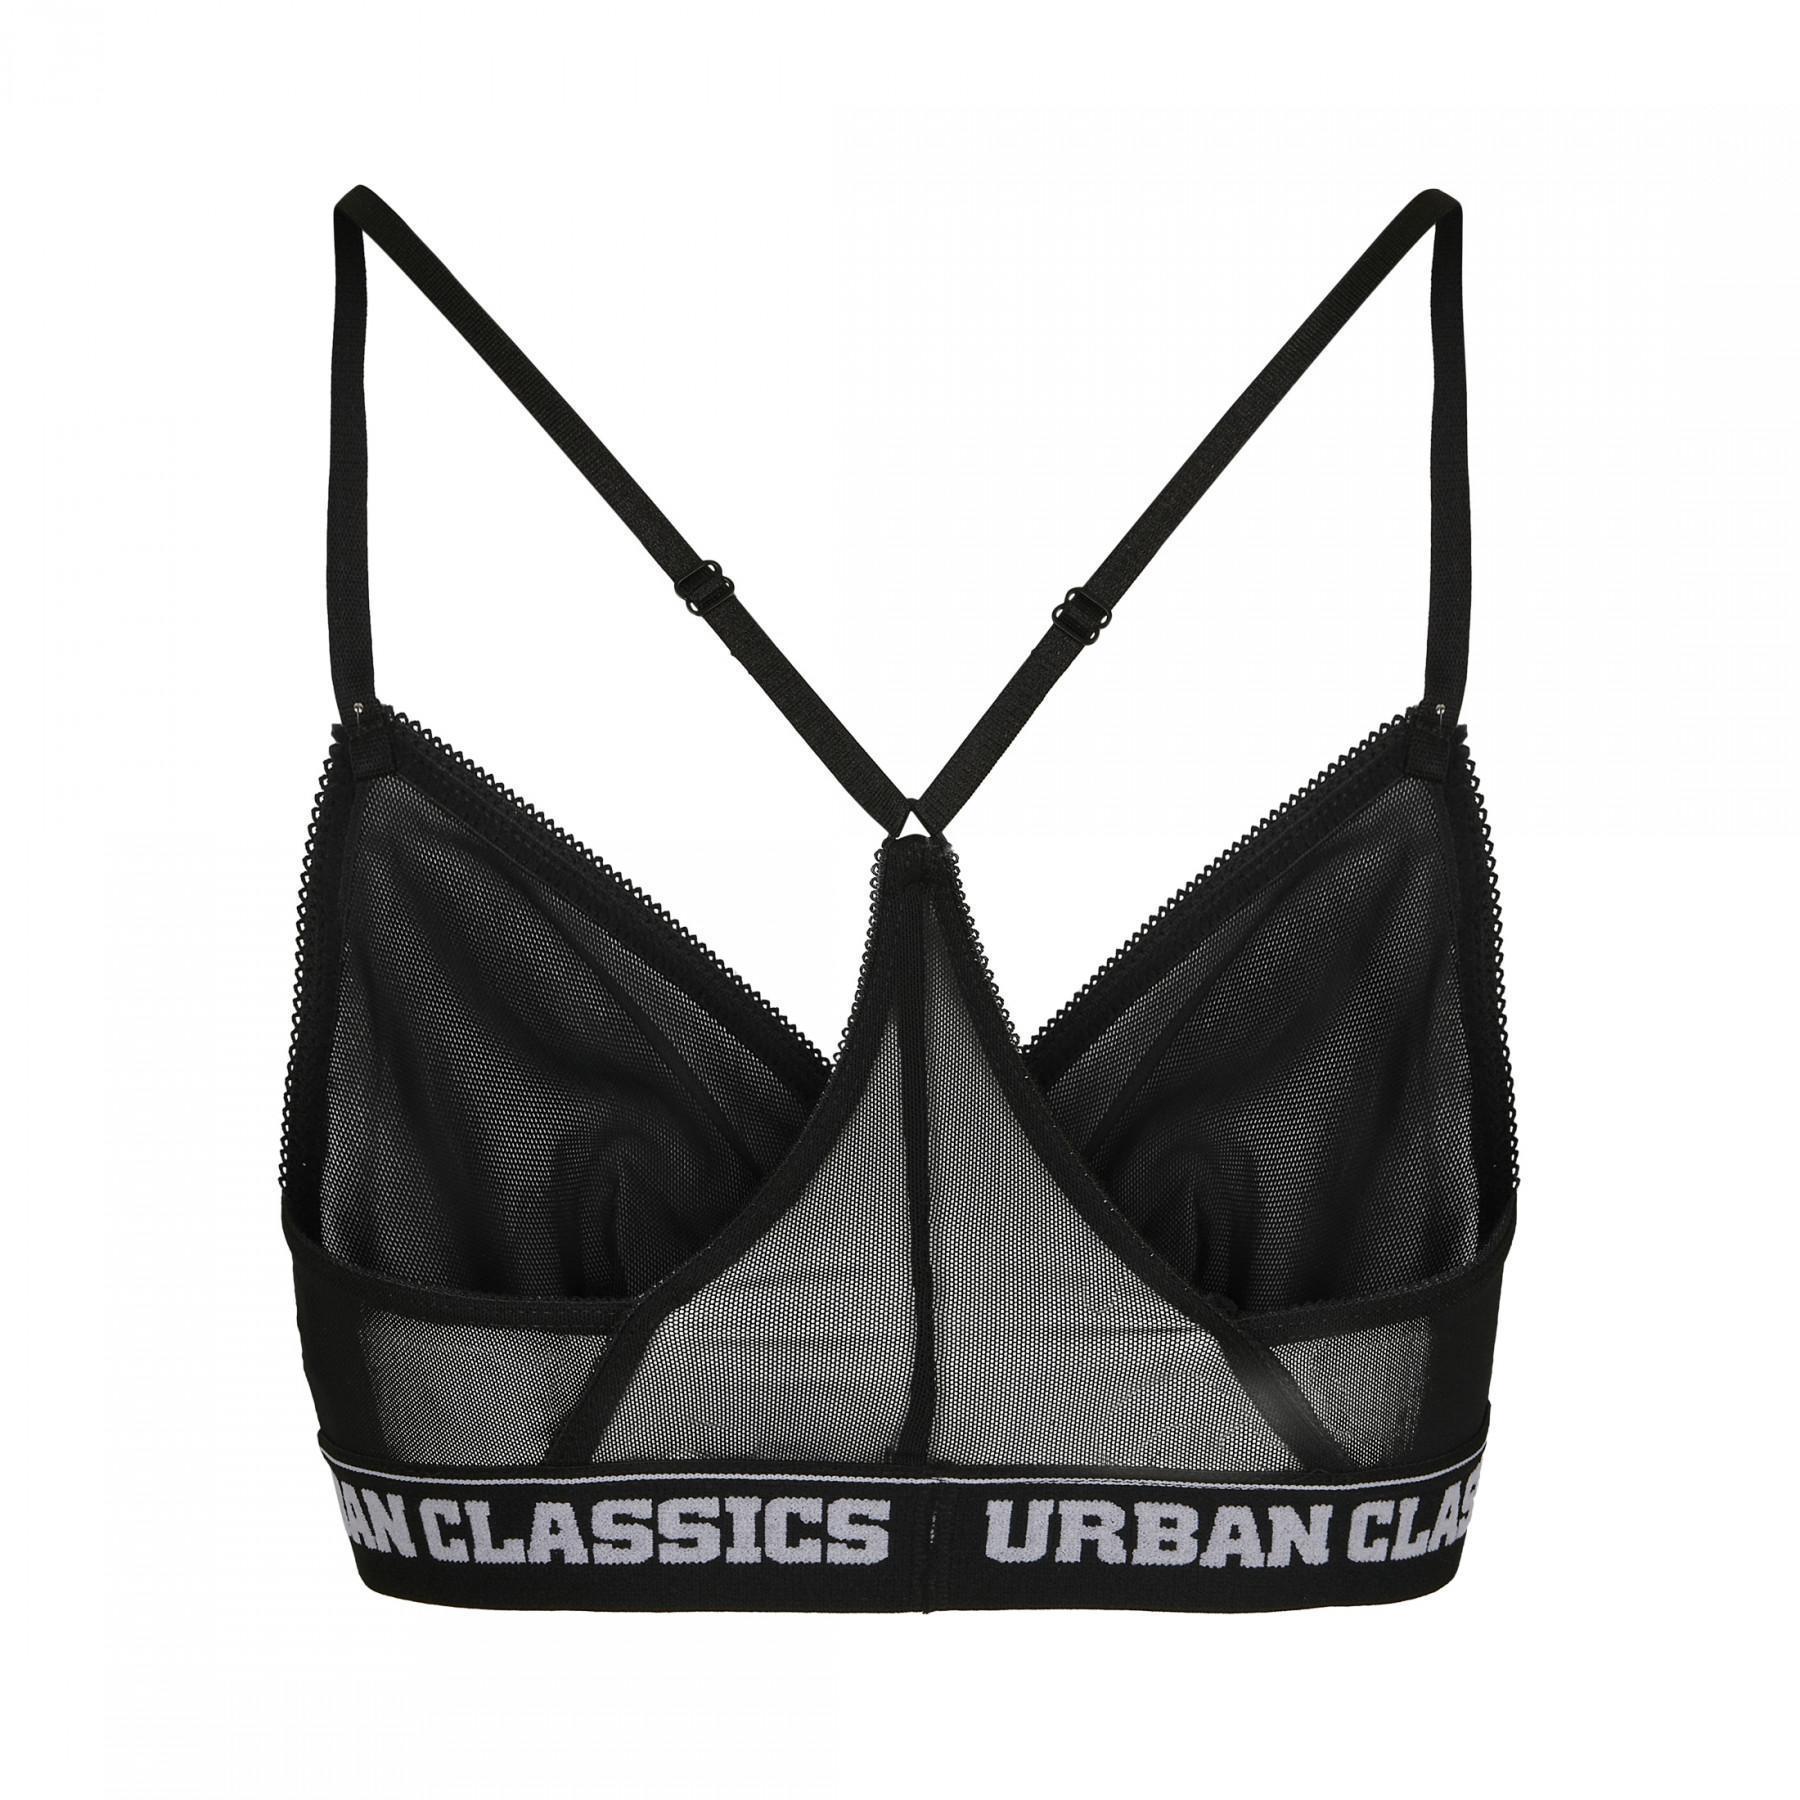 Women's Urban Classic mesh bra